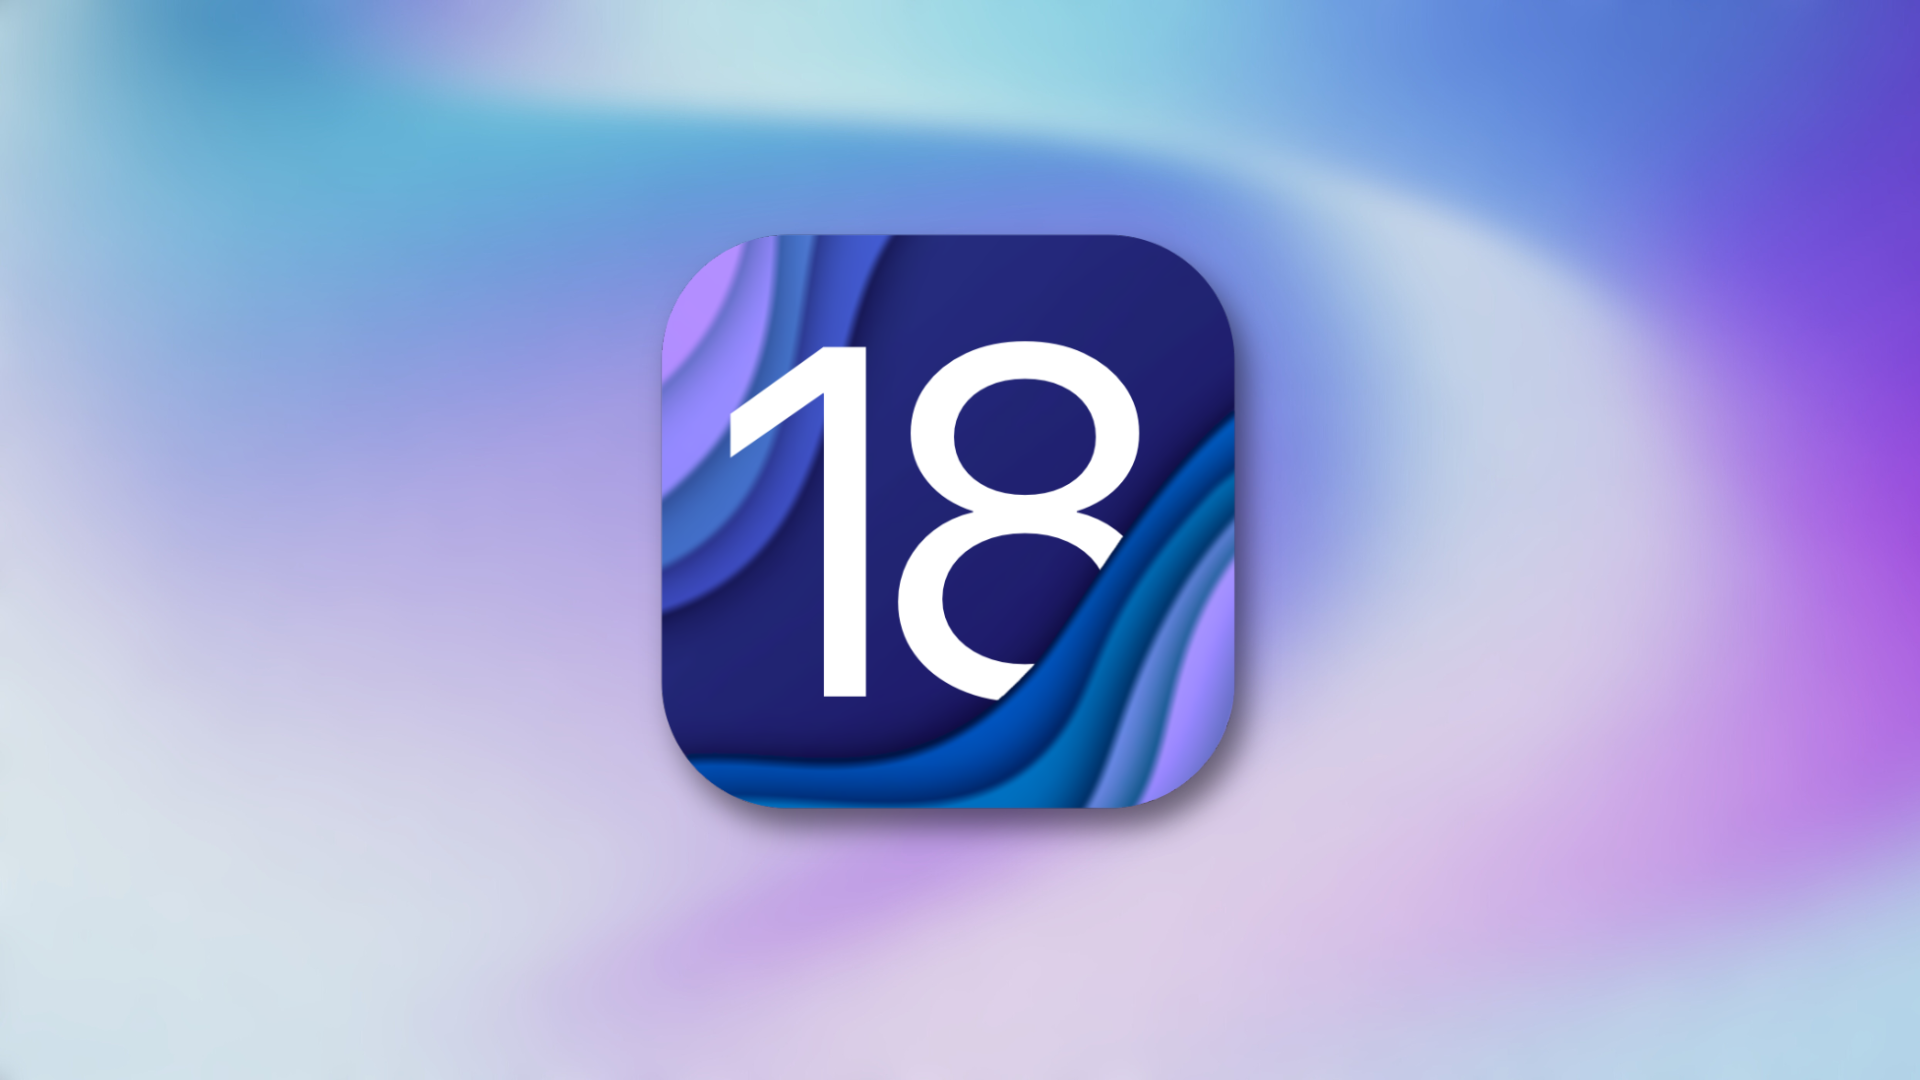 iOS 18 आपकी होम स्क्रीन को अनुकूलित करने की अधिक स्वतंत्रता लाता है